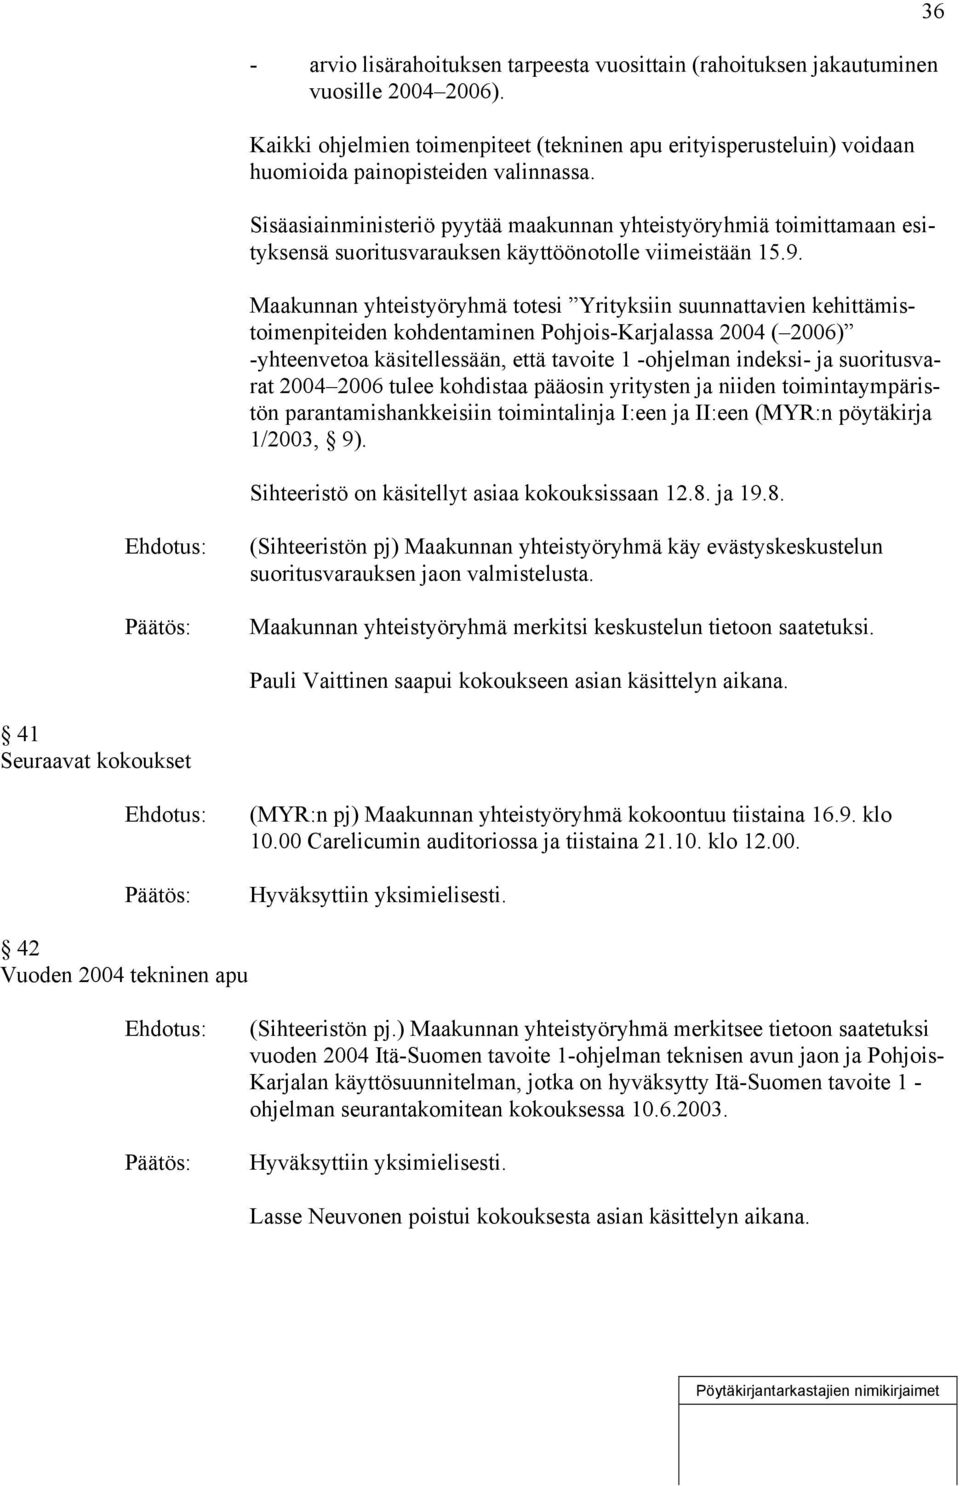 Maakunnan yhteistyöryhmä totesi Yrityksiin suunnattavien kehittämistoimenpiteiden kohdentaminen Pohjois-Karjalassa 2004 ( 2006) -yhteenvetoa käsitellessään, että tavoite 1 -ohjelman indeksi- ja